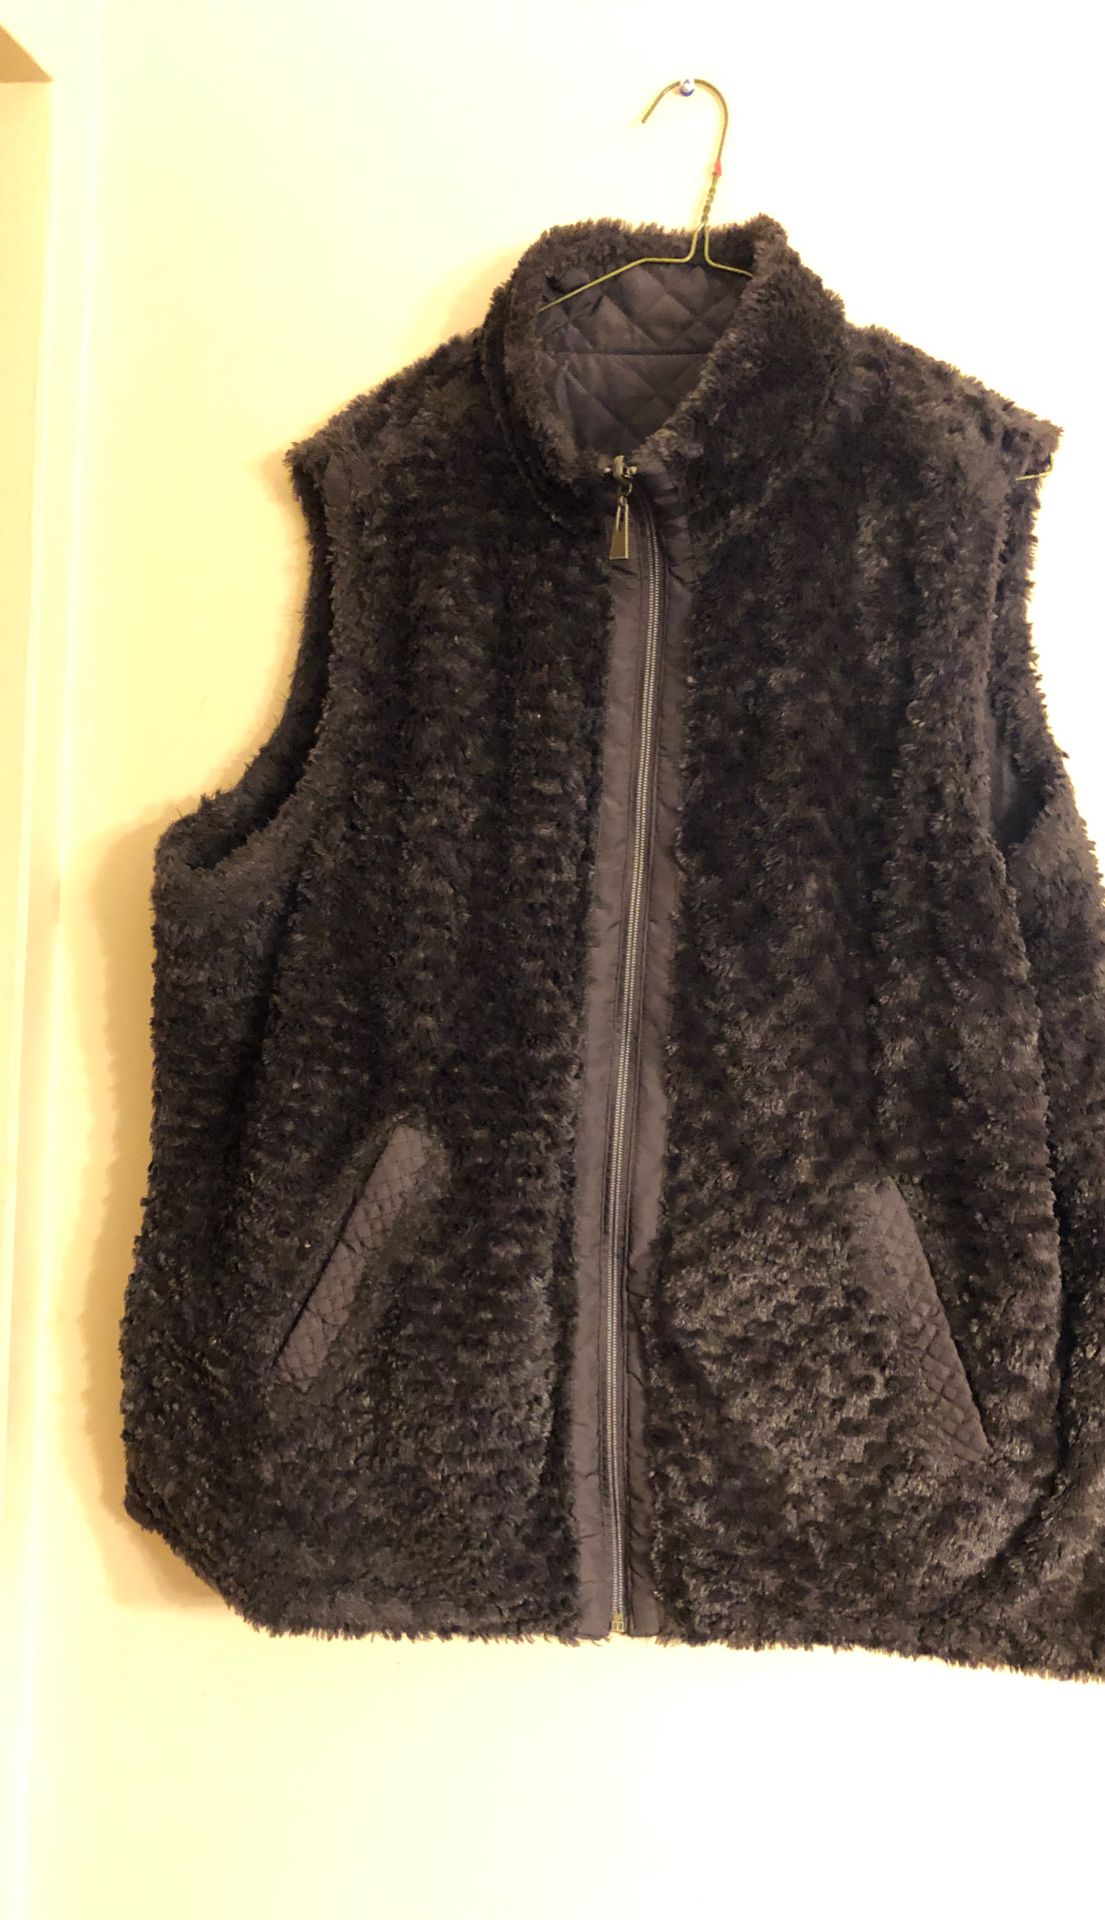 Reversable Ladies Fur Vest 2XL